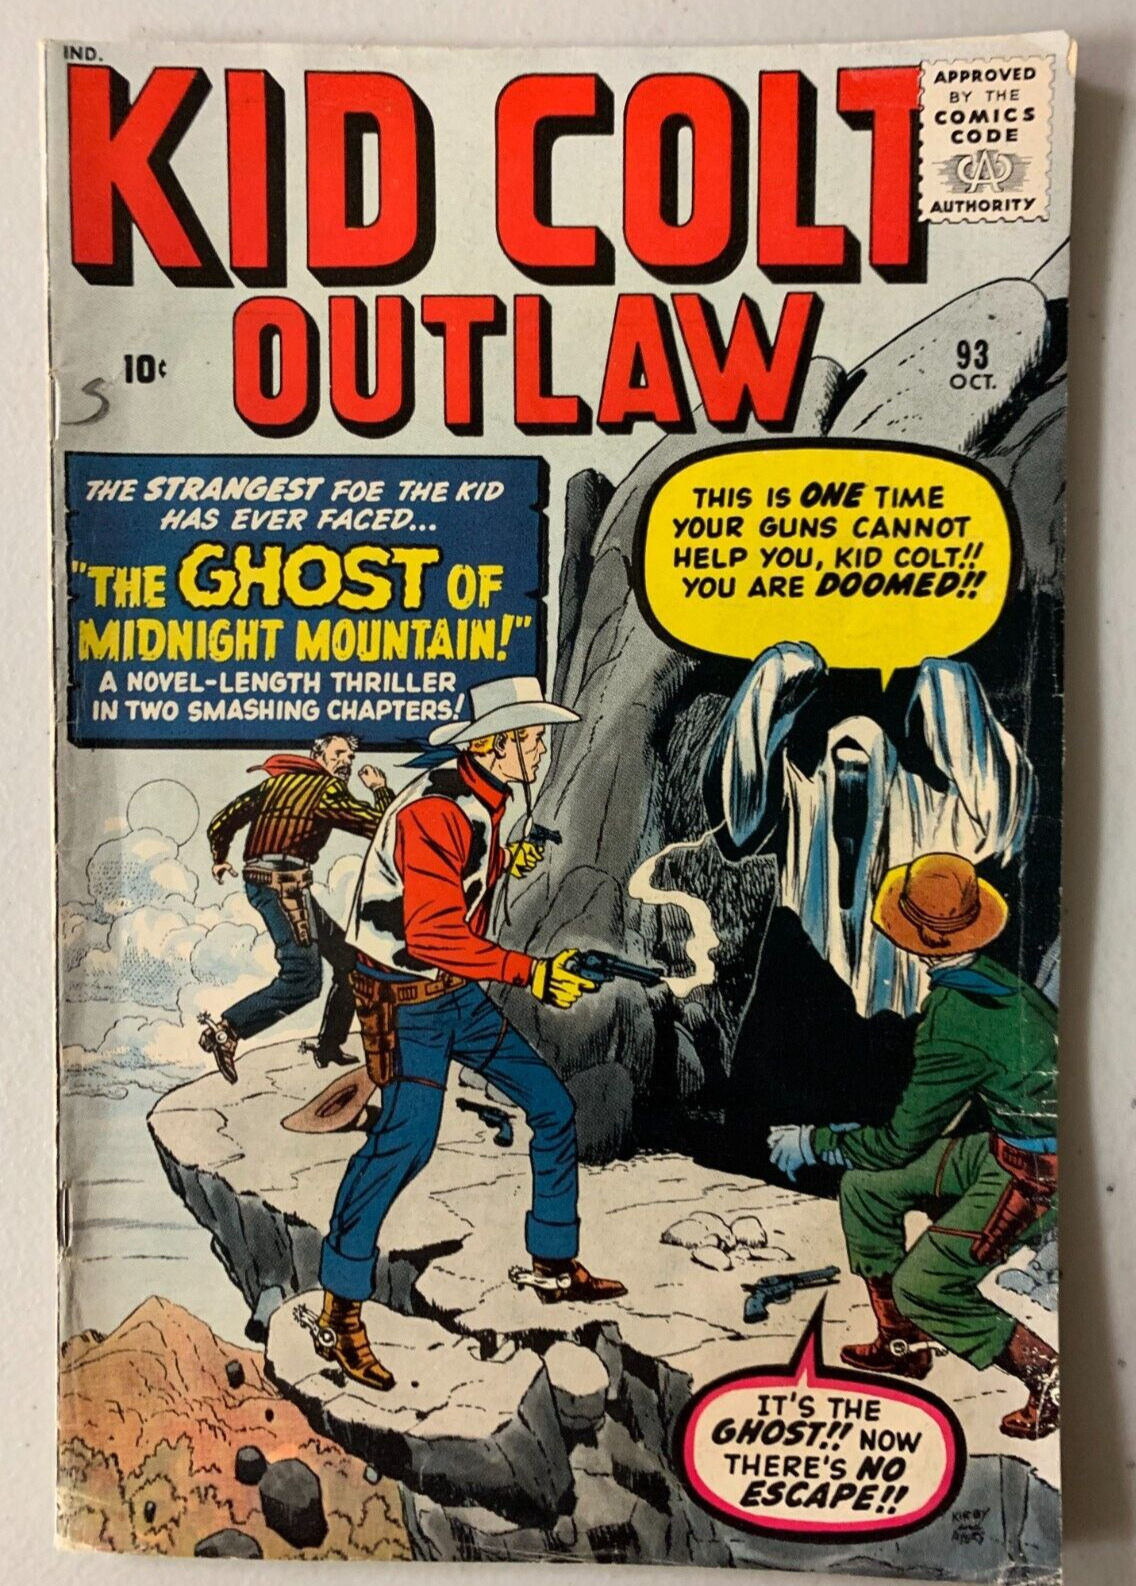 Kid Colt Outlaw #93 Marvel (4.0 VG) (1960)